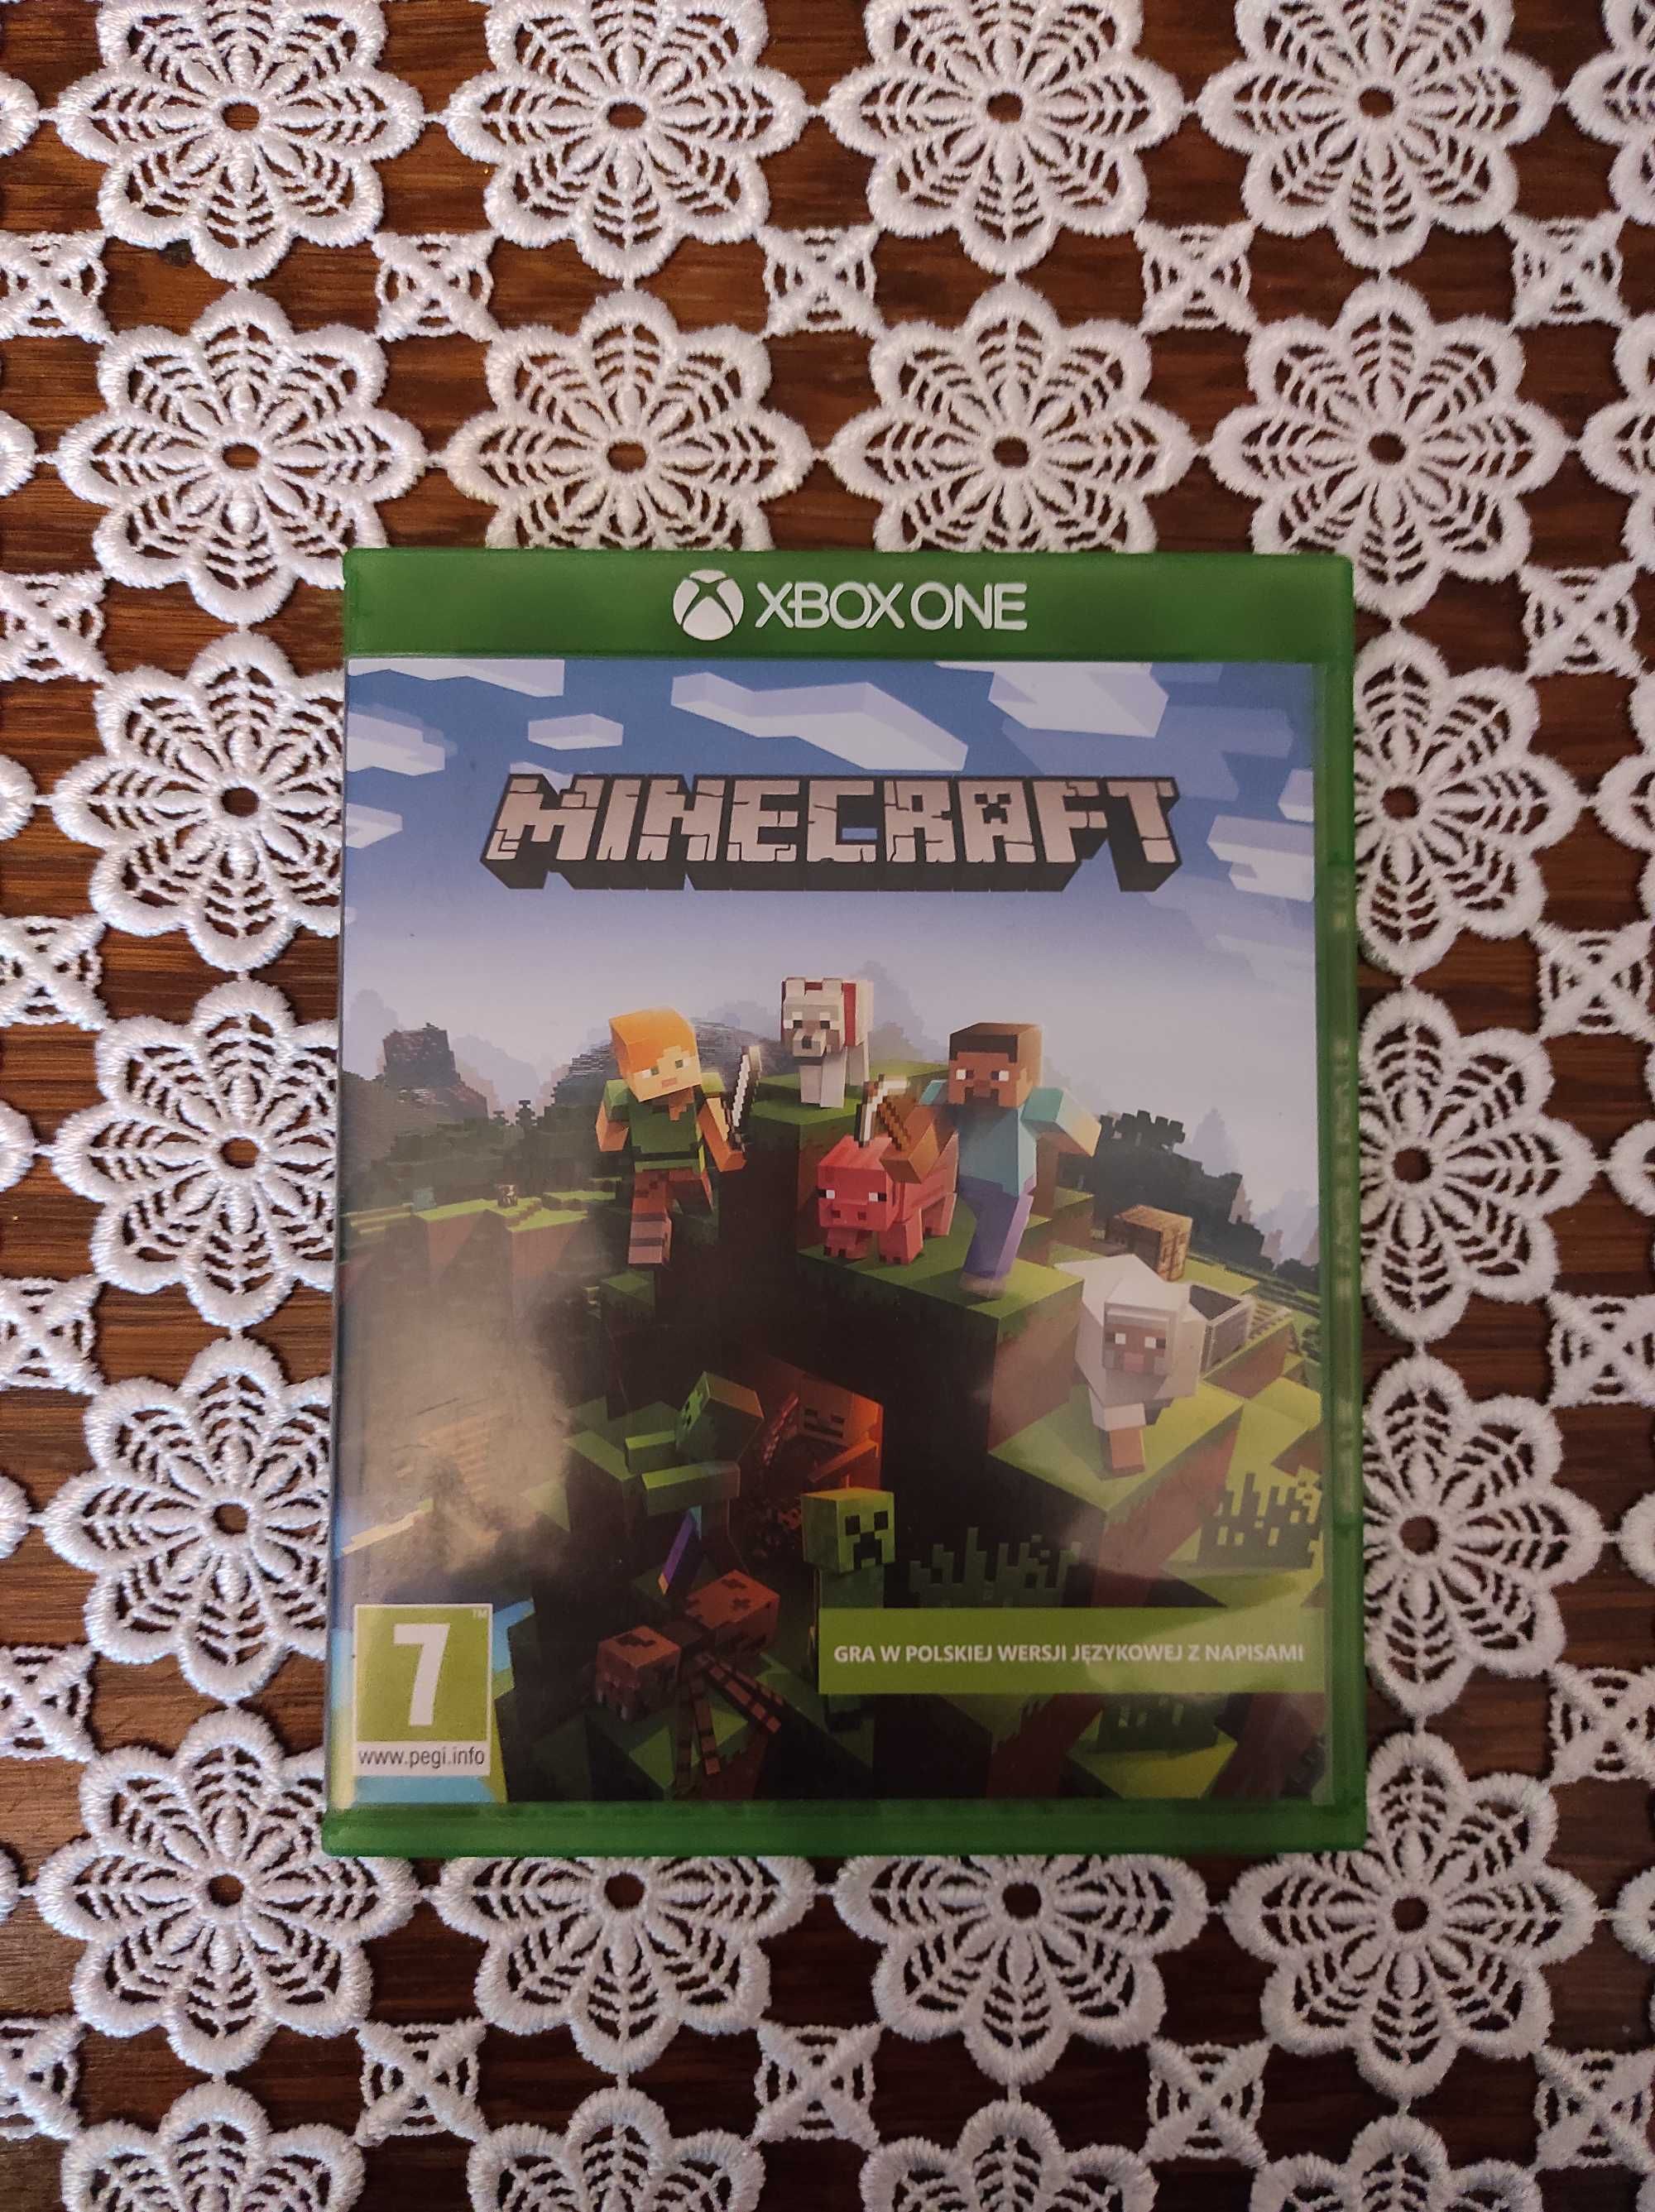 GRY do sprzedania (Minecraft, Lego Przygoda 2, Iniemamocni)